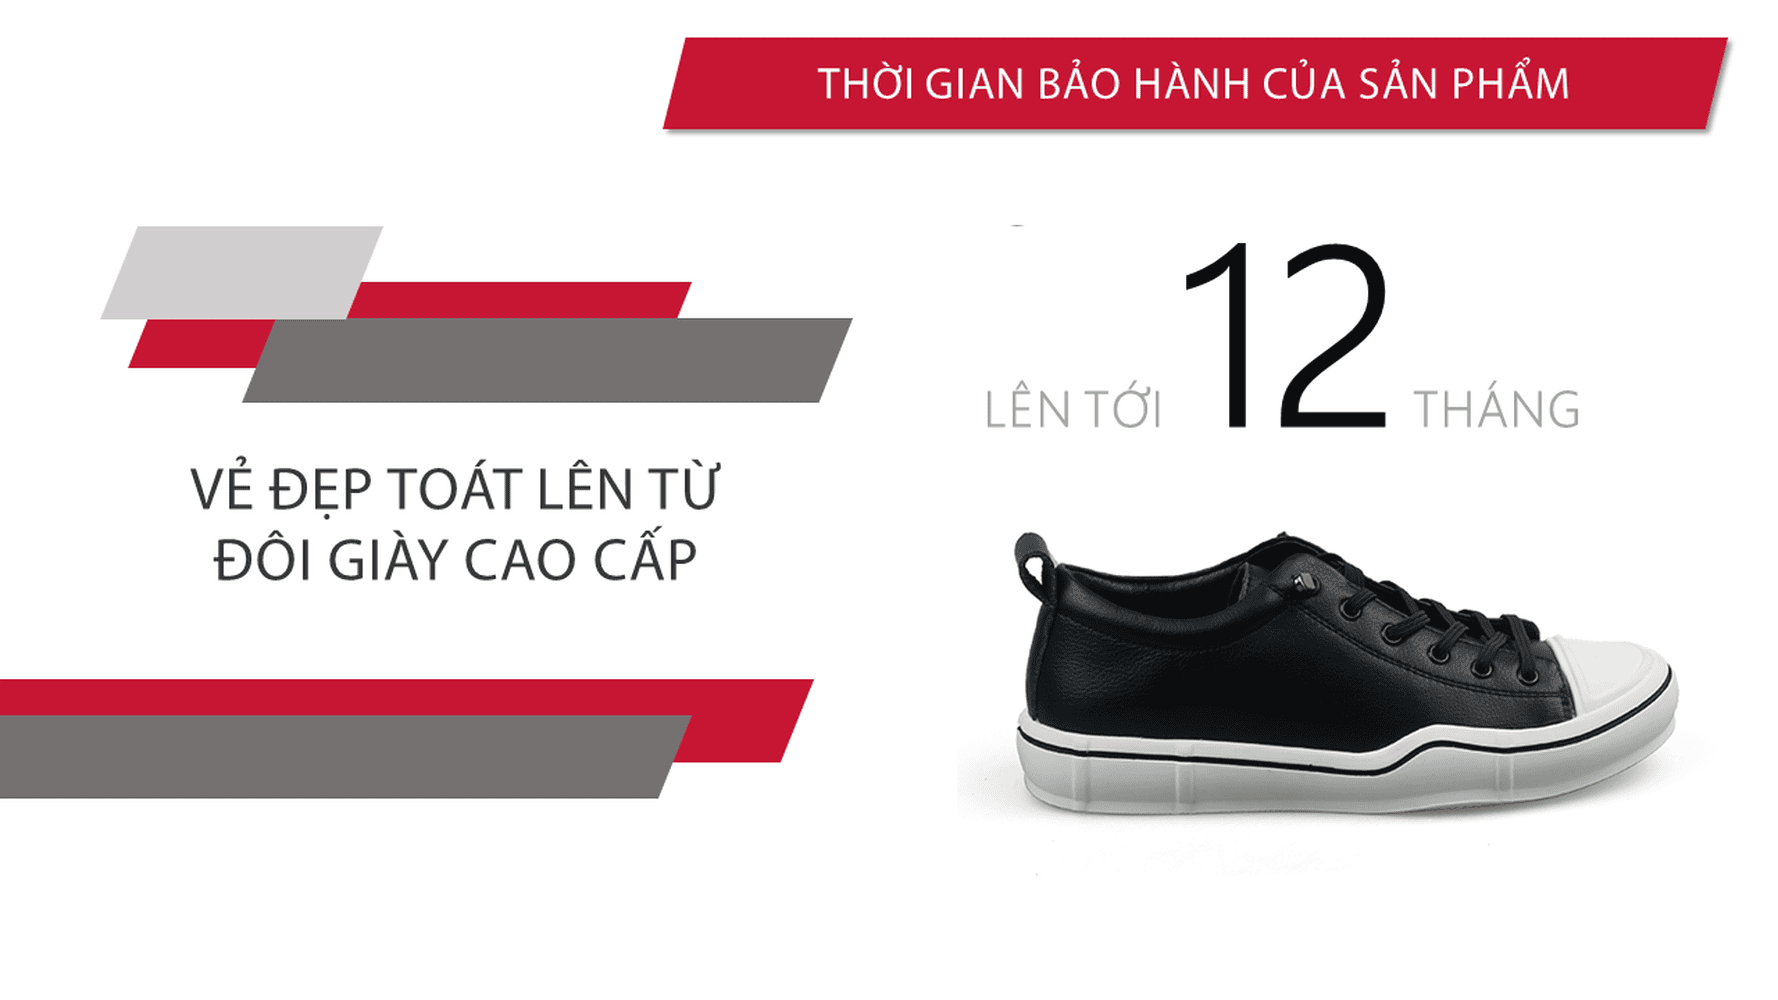 Giày buộc dây thời trang thương hiệu luminguei cao cấp chính hãng màu đen trắng BD1210T10